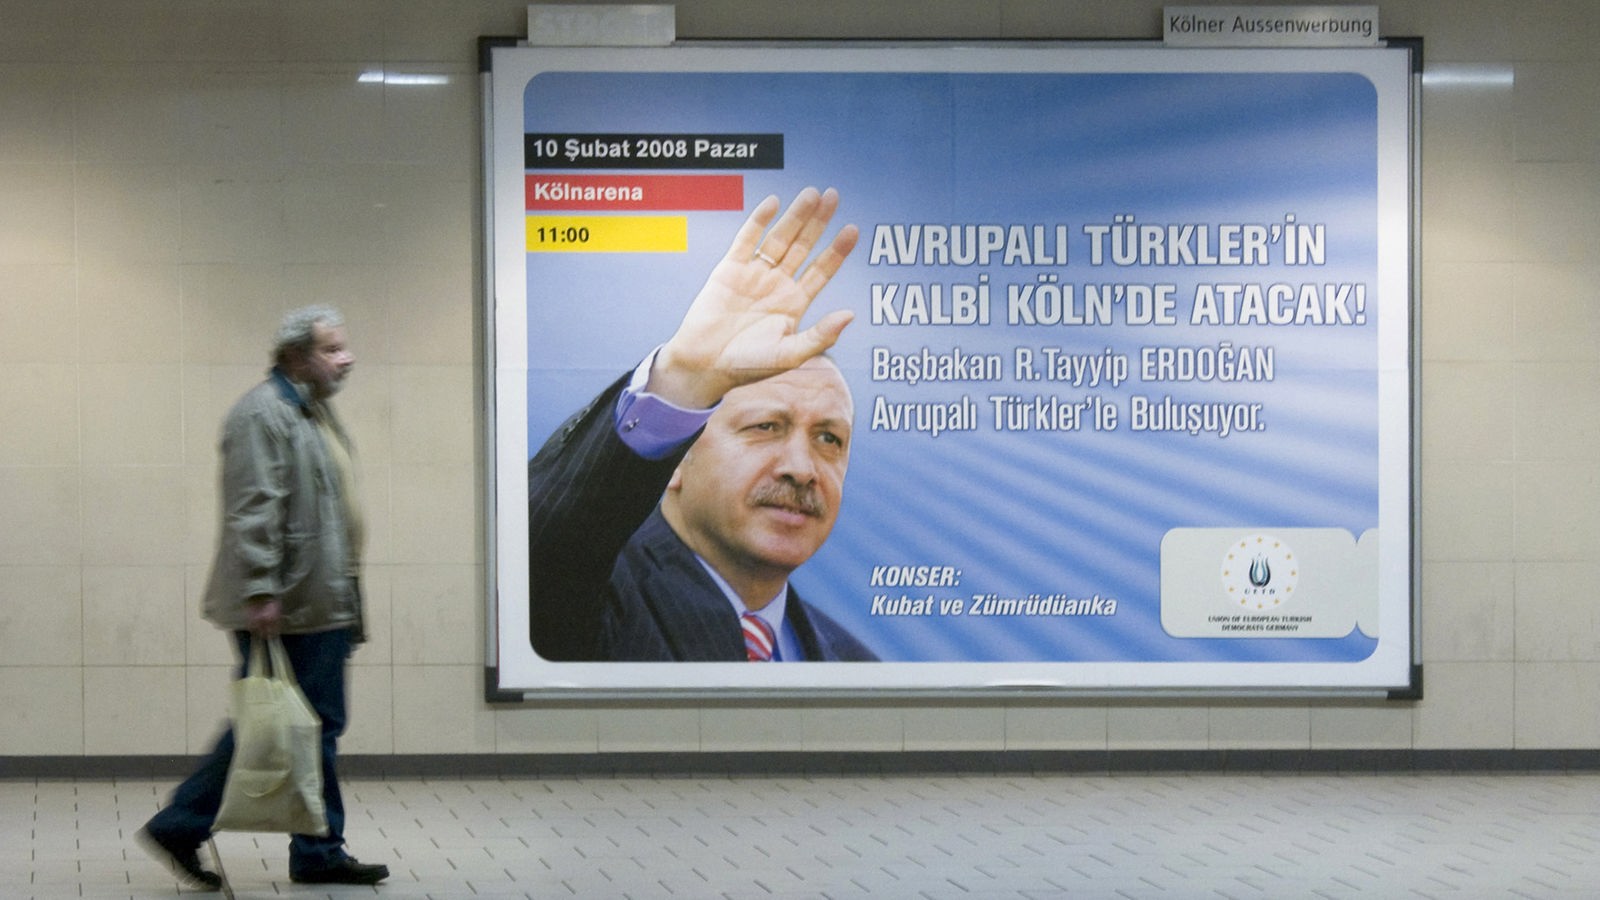 Stichtag 10 Februar 08 Erster Wahlkampf Auftritt Von Redep Tayyip Erdogan In Koln Stichtag Wdr